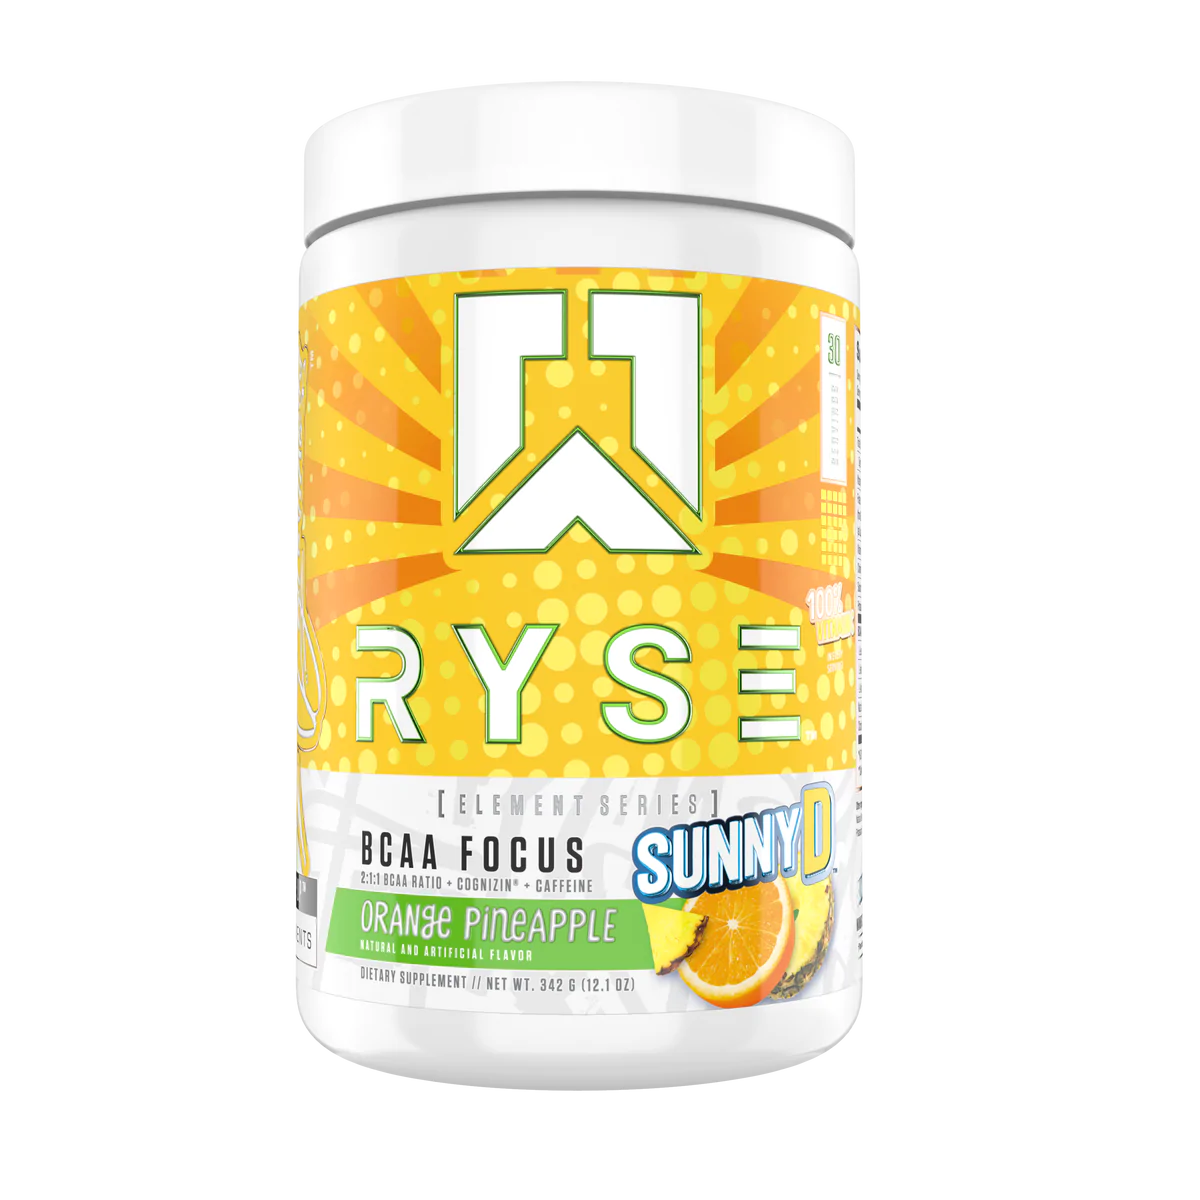 RYSE BCAA Focus - SunnyD Orange Pineapple